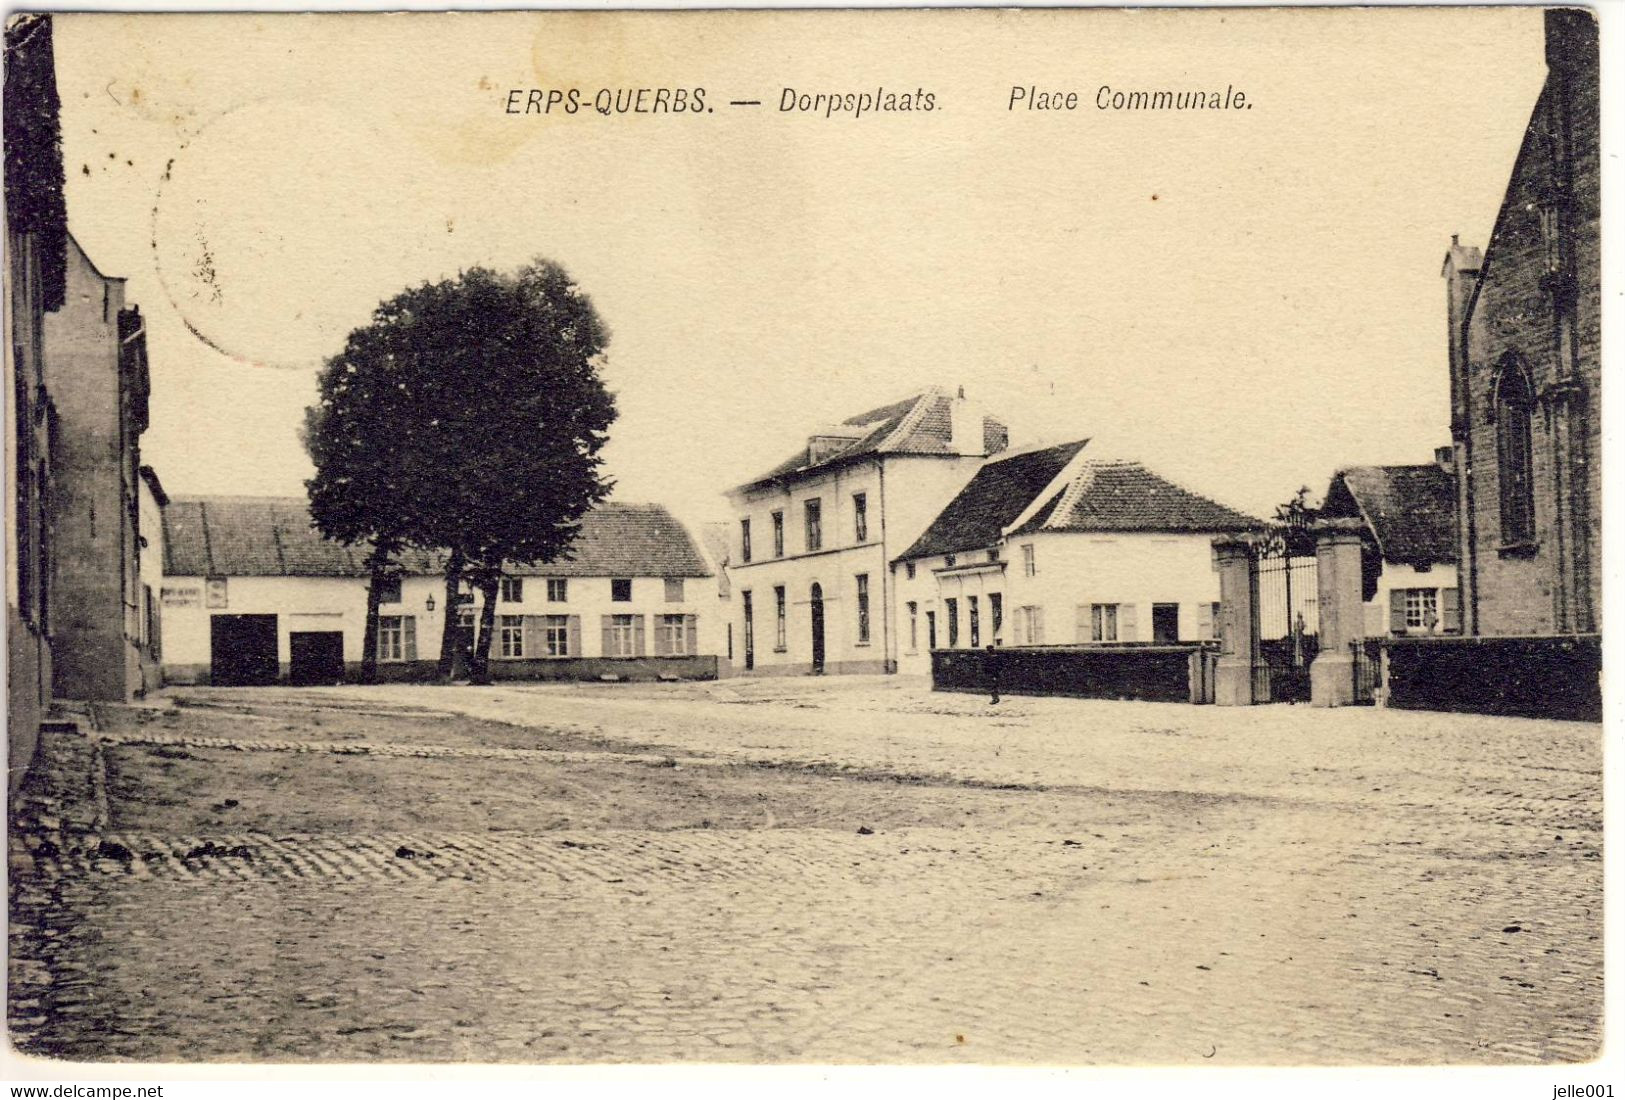 Erps-Querbs Kortenberg Dorpsplaats 1909 - Kortenberg